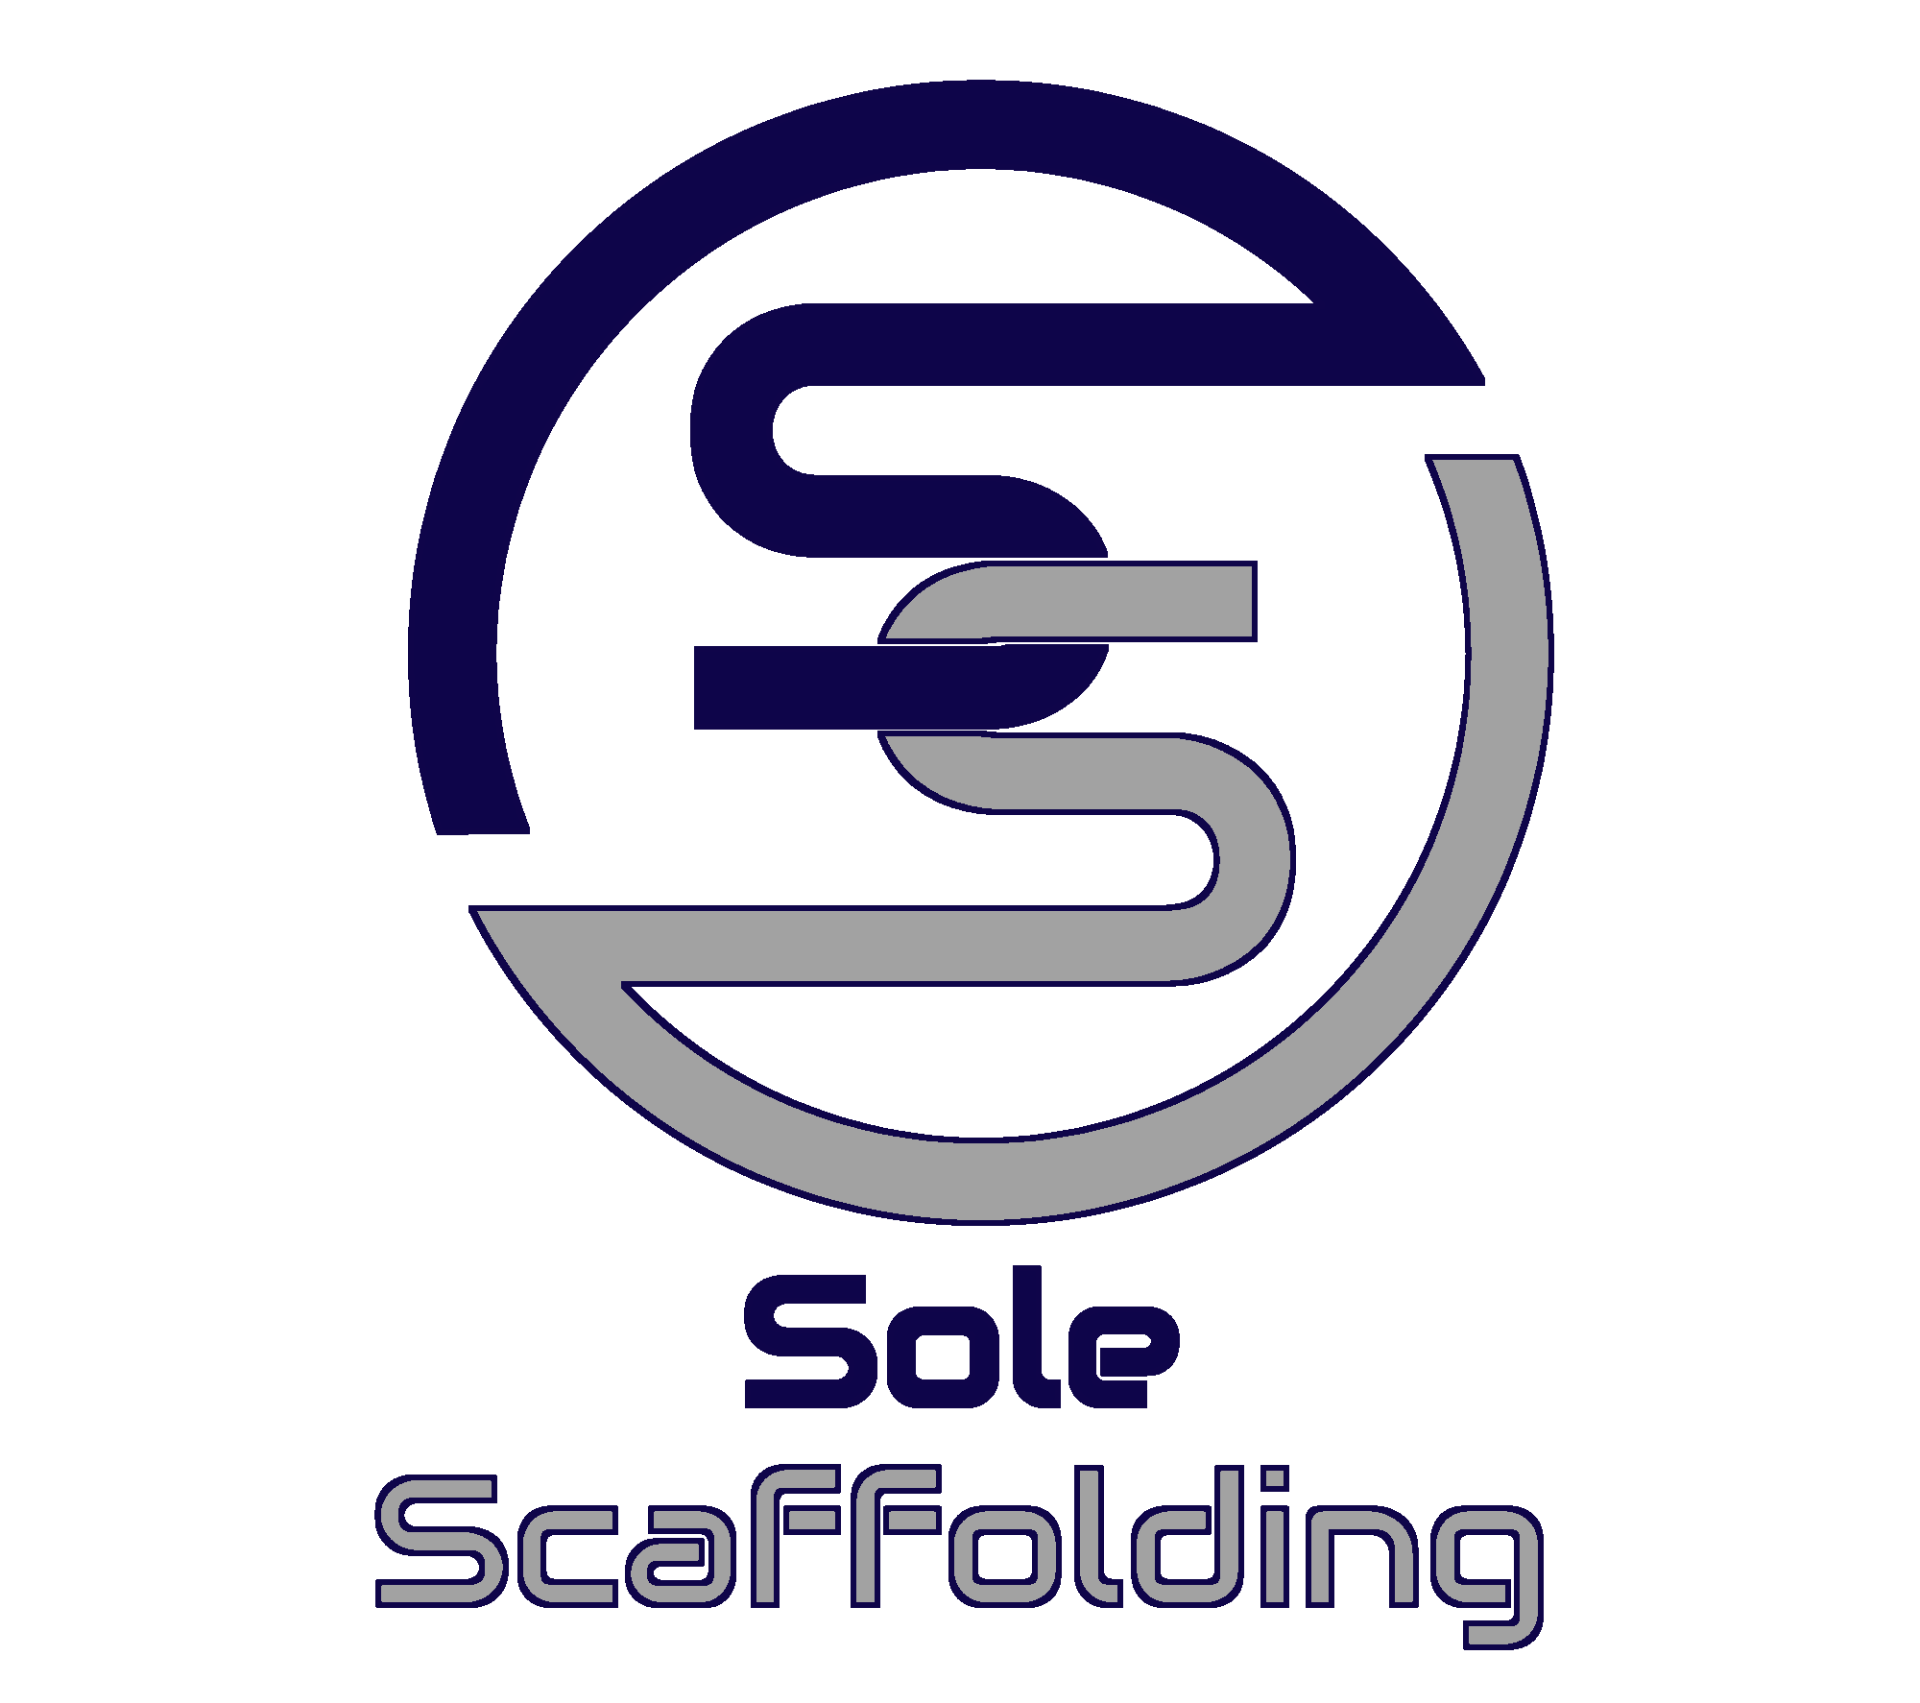 sole scaffolding  logo 2